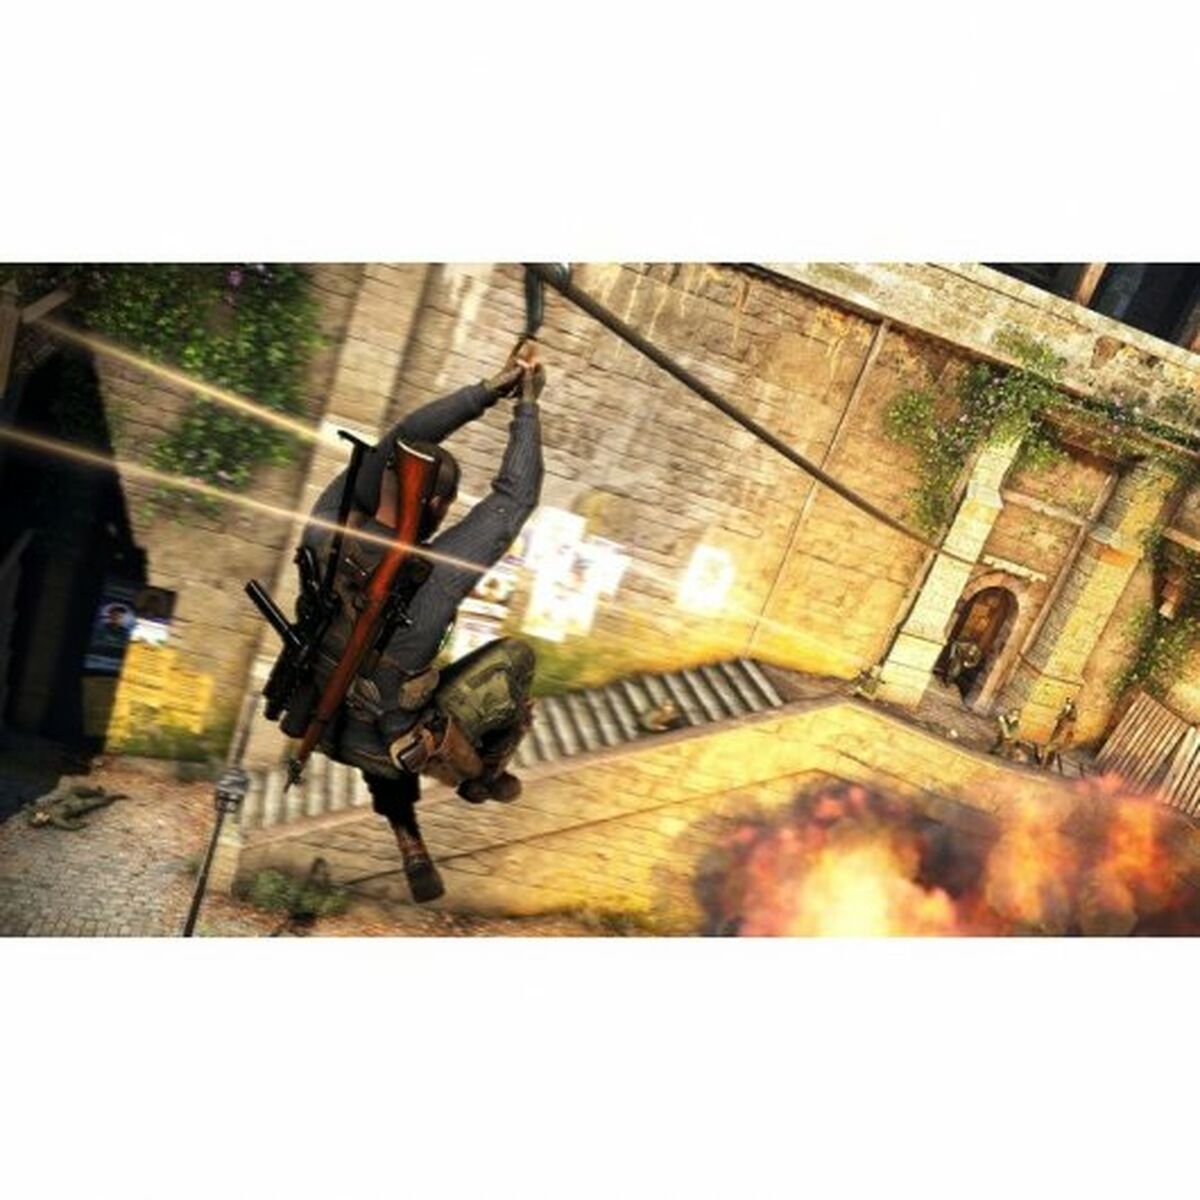 Βιντεοπαιχνίδι PlayStation 5 Bumble3ee Sniper Elite 5 (ES)